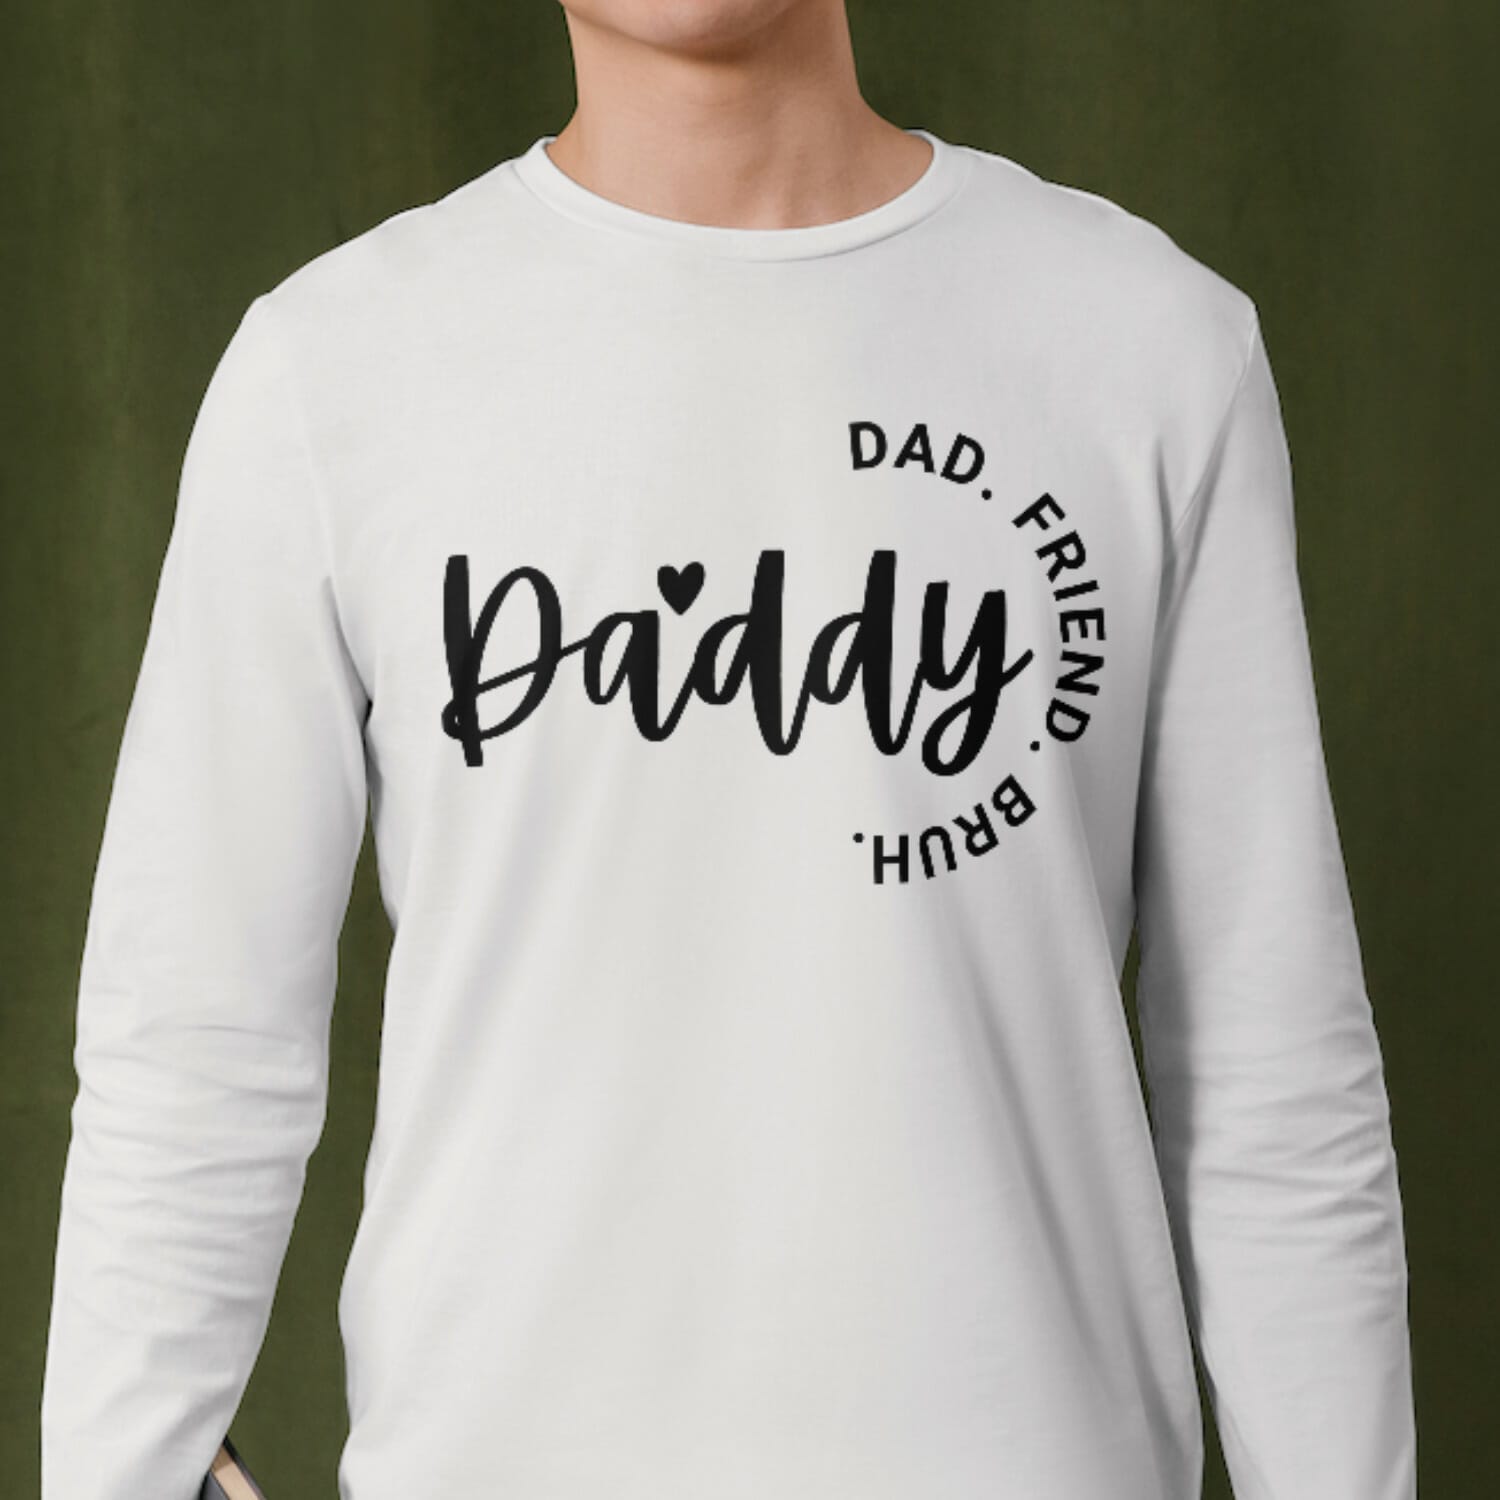 Daddy, Dad, Friend,Bruh Tshirt Design